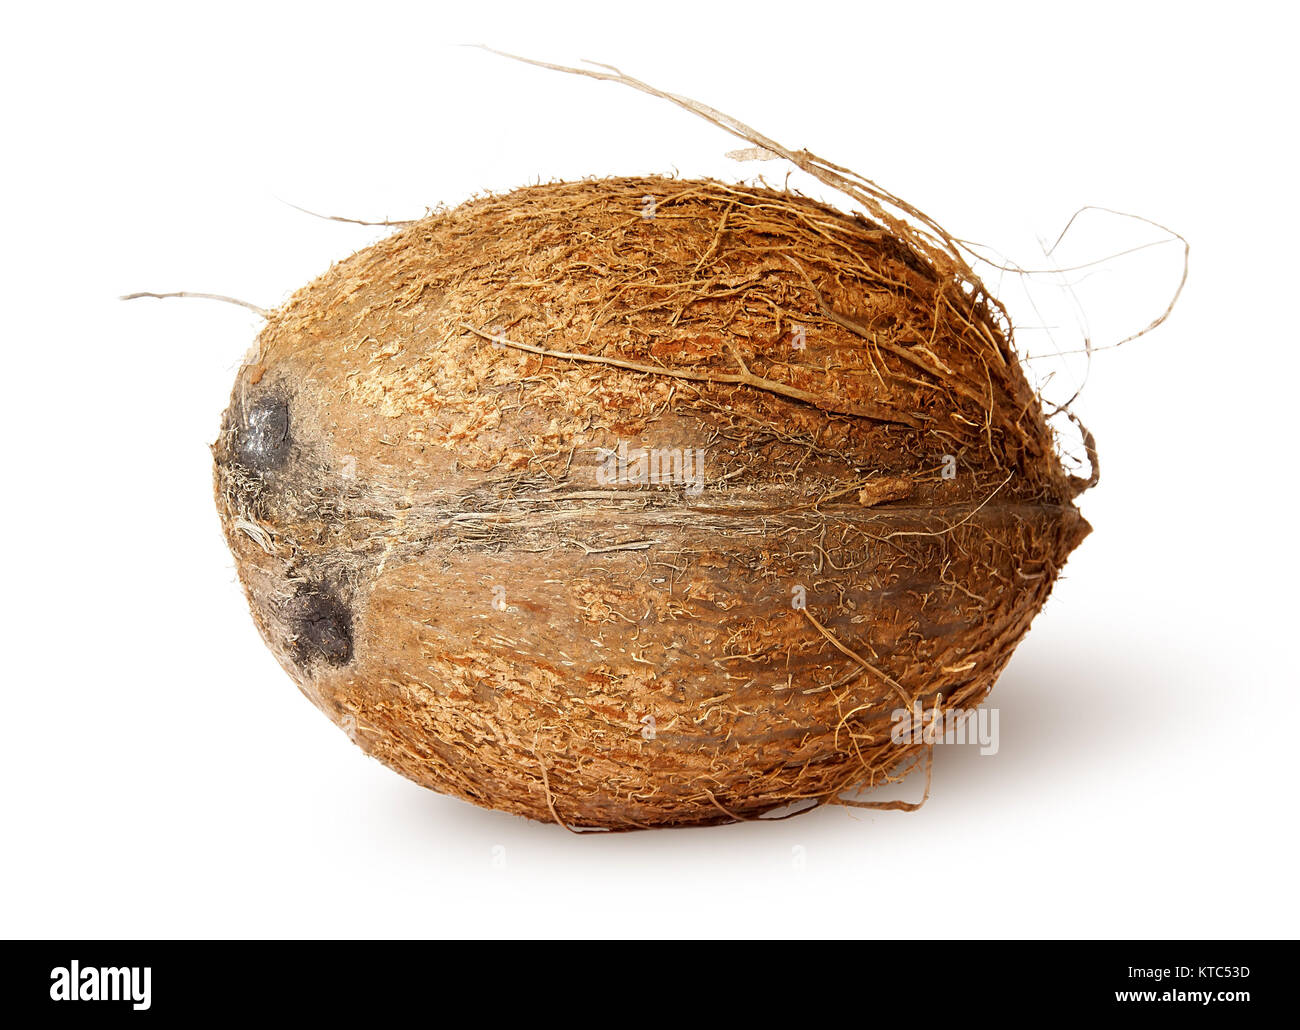 Coconut lying horizontally Stock Photo